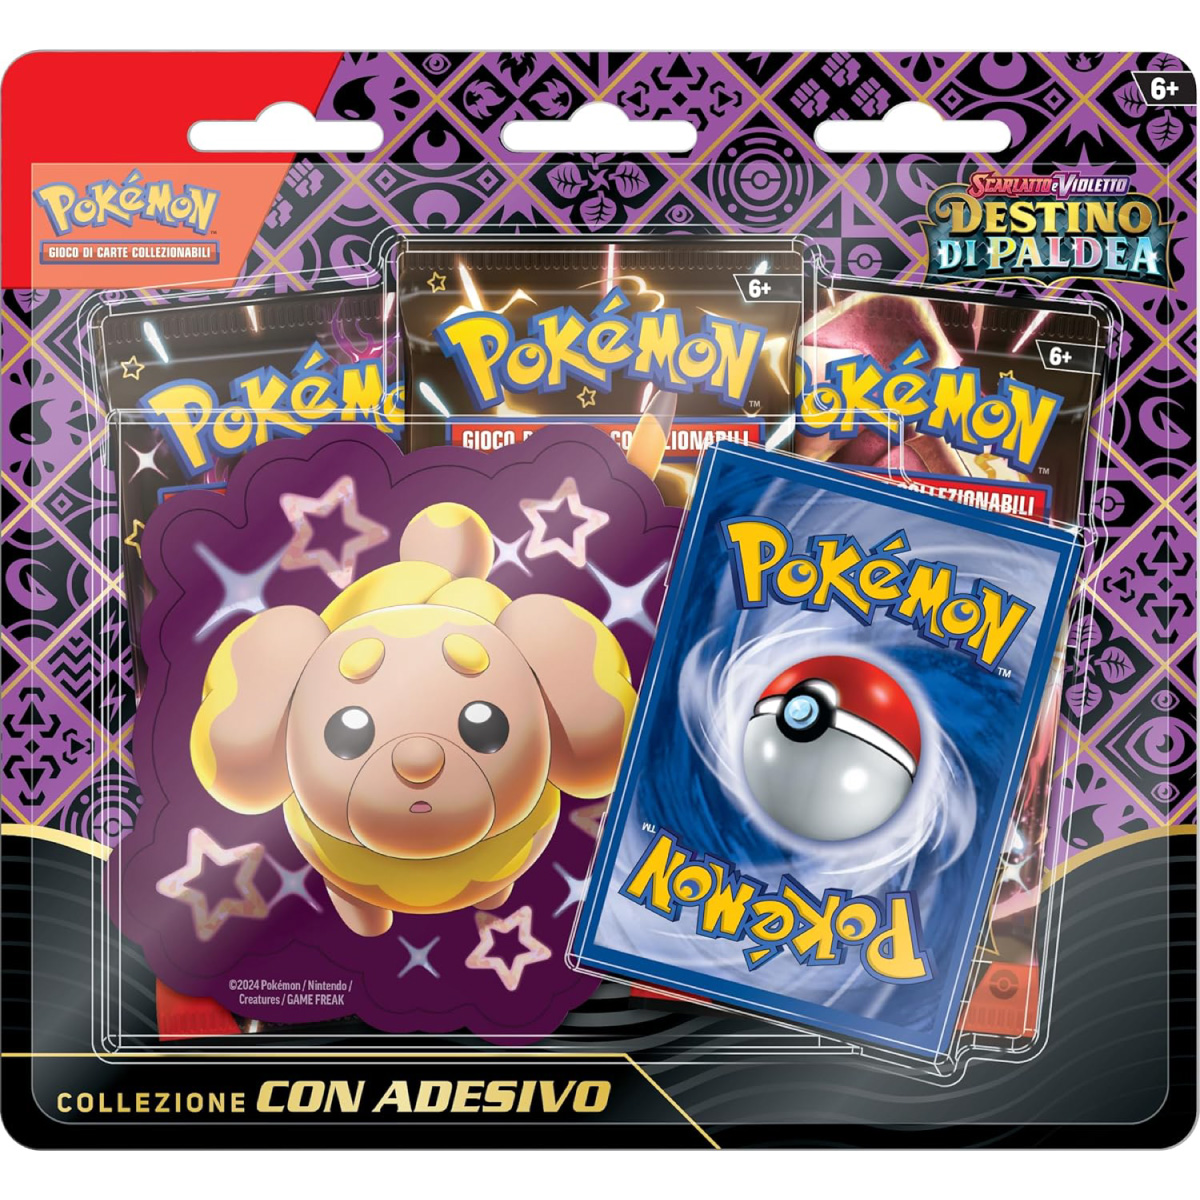 pokemon gcc - pokemon scarlatto e violetto destino di paldea - collezione completa 3 collezione con adesivo (ita) - pk61441